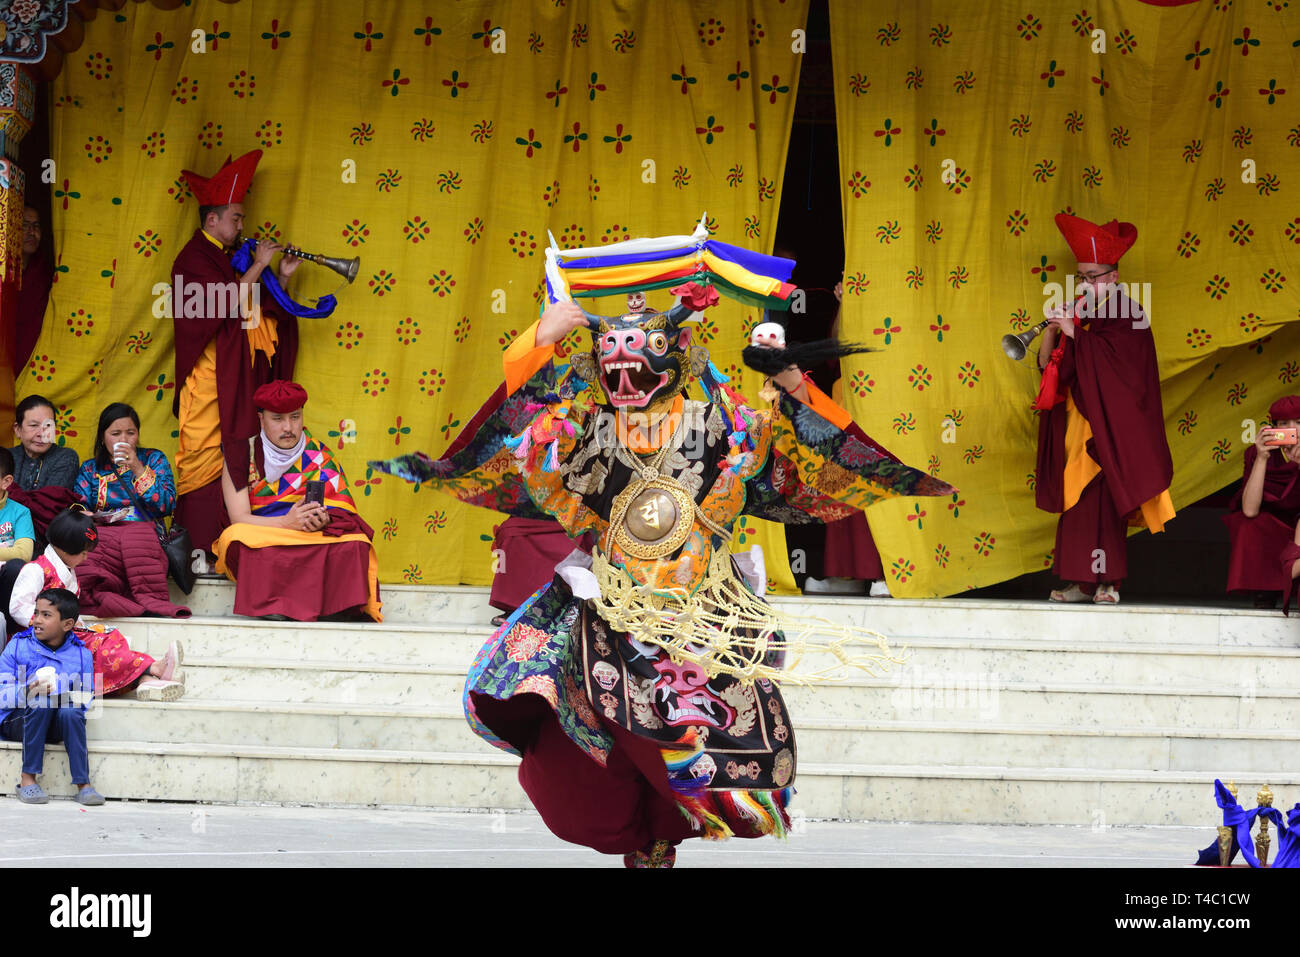 April 14, 2019-Dali, Darjeeling, West Bengal, Indien - Tshechu eine jährliche religiöse Buddhistische Festival durch die drukpa Linie der Karma-Kagyü-Schule des tibetischen Buddhismus gefeiert wird am zehnten Tag des Monats nach dem tibetischen Mondkalender entsprechend der Geburtstag von Guru Rimpoche (Guru Padmasambhava) wurde auf Druk Sang-Ngag Choling Kloster in Dali gehalten, Darjeeling auf 14/04/2019. Aber die genauen Monat des Tshechu variiert von Ort zu Ort und Kloster zu Kloster. Tshechus sind große Ereignisse, wo ganze Gemeinschaften gemeinsam Zeugnis Cham (Maske Tänze) Leistung von acht Manifestation kommen Stockfoto